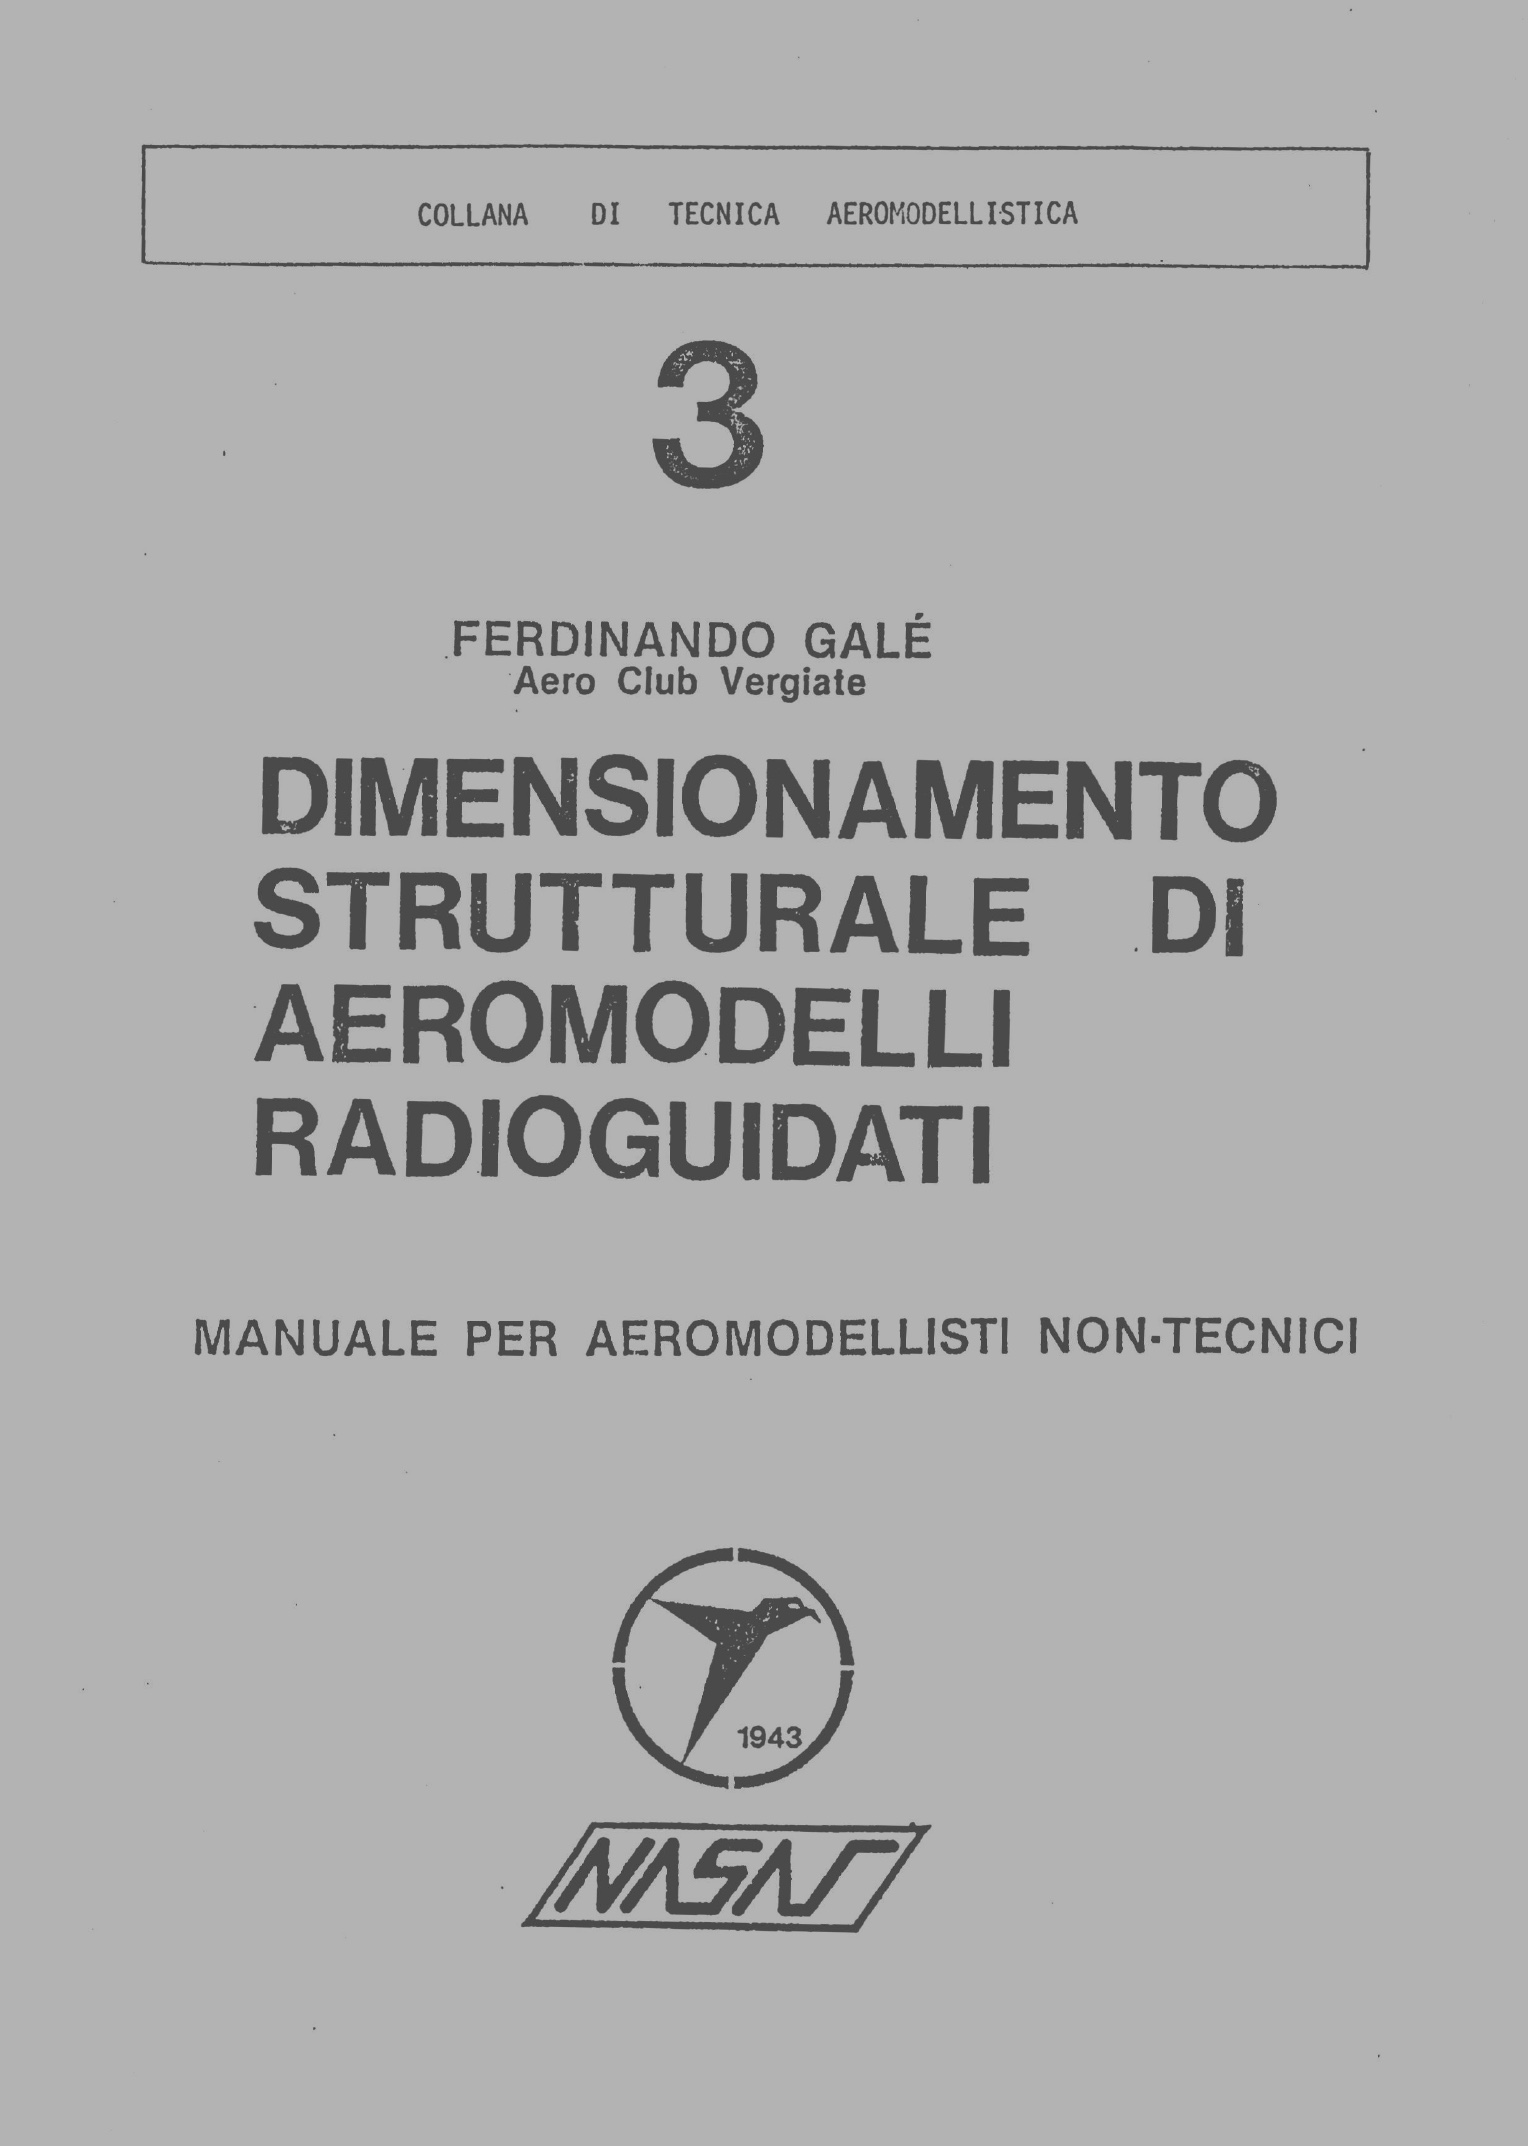 Modellismo aereo - Galè -Dimensionamento Strutturale di Aeromodelli 1976  - <b>DOWNLOAD</b>